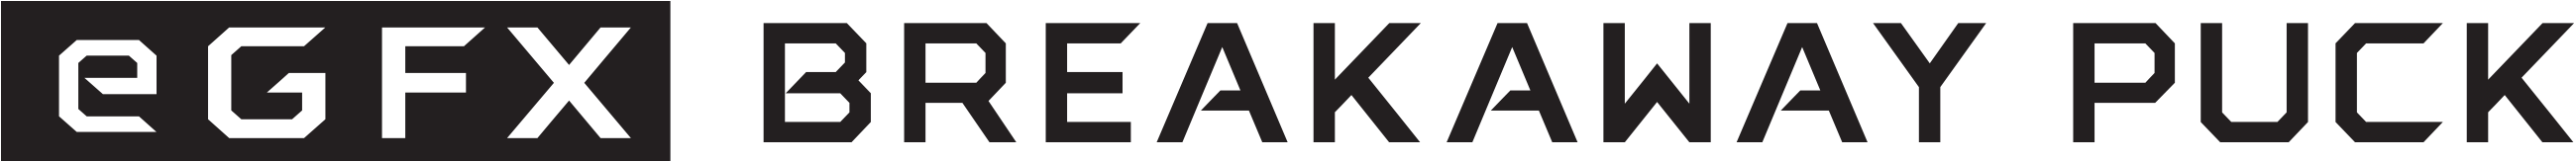 eGFX Breakaway Puck Logo